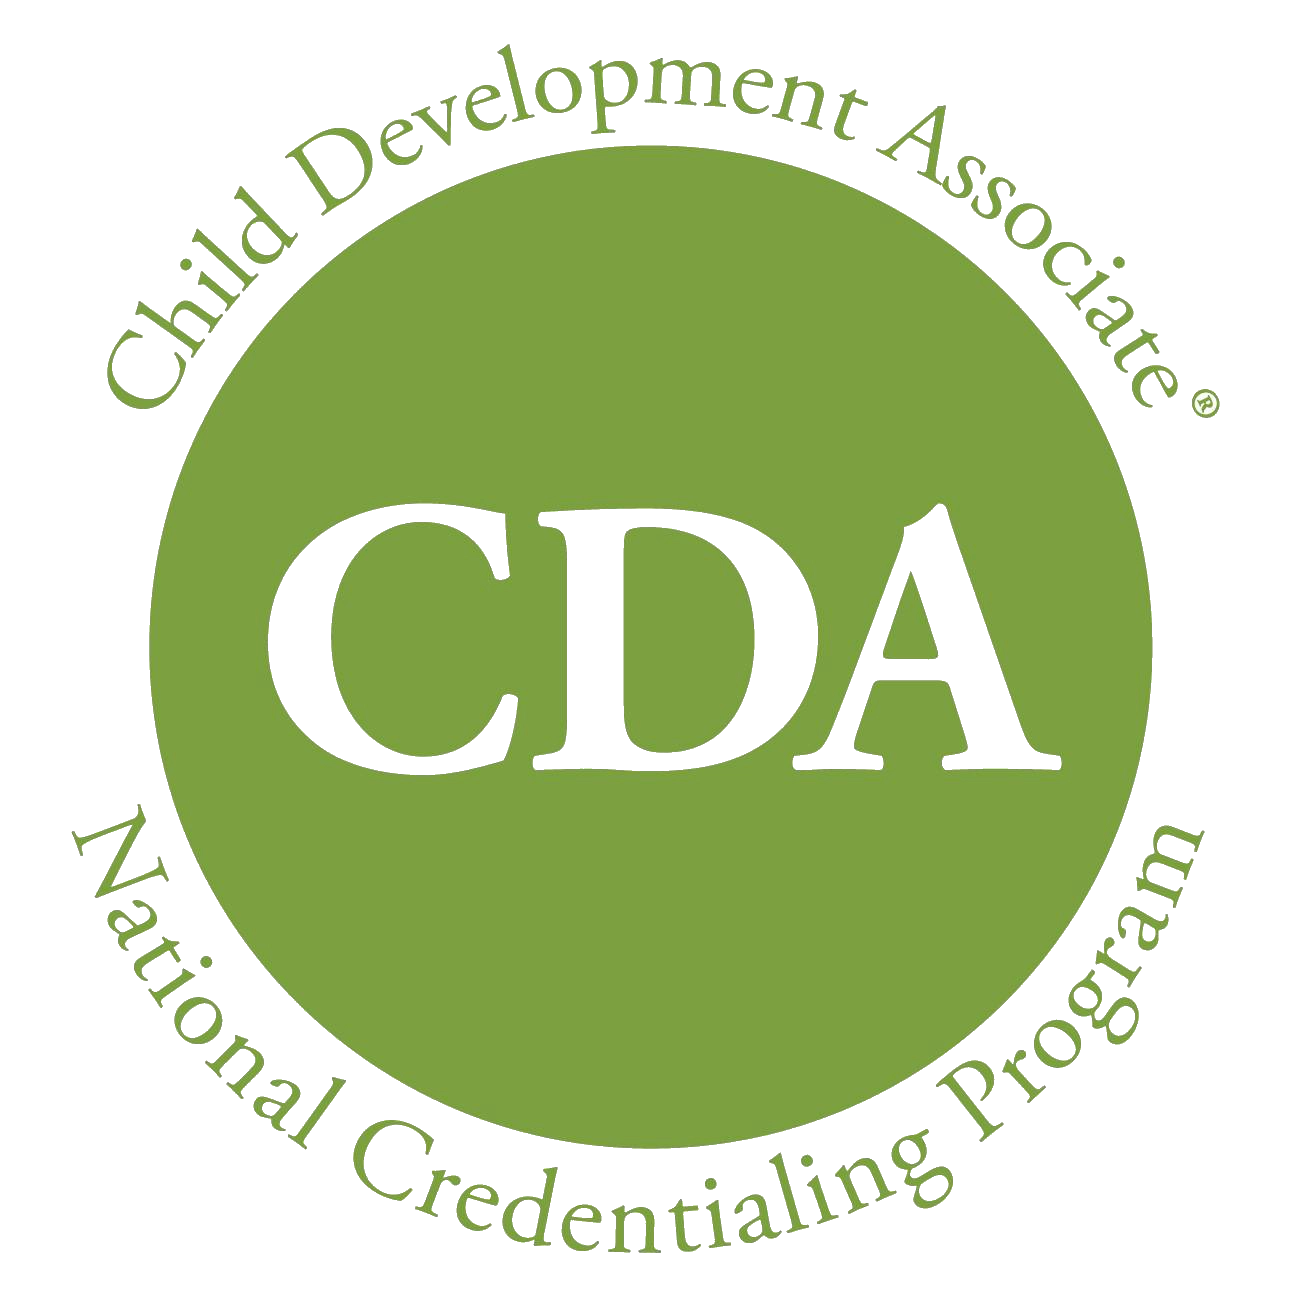 CDA logo